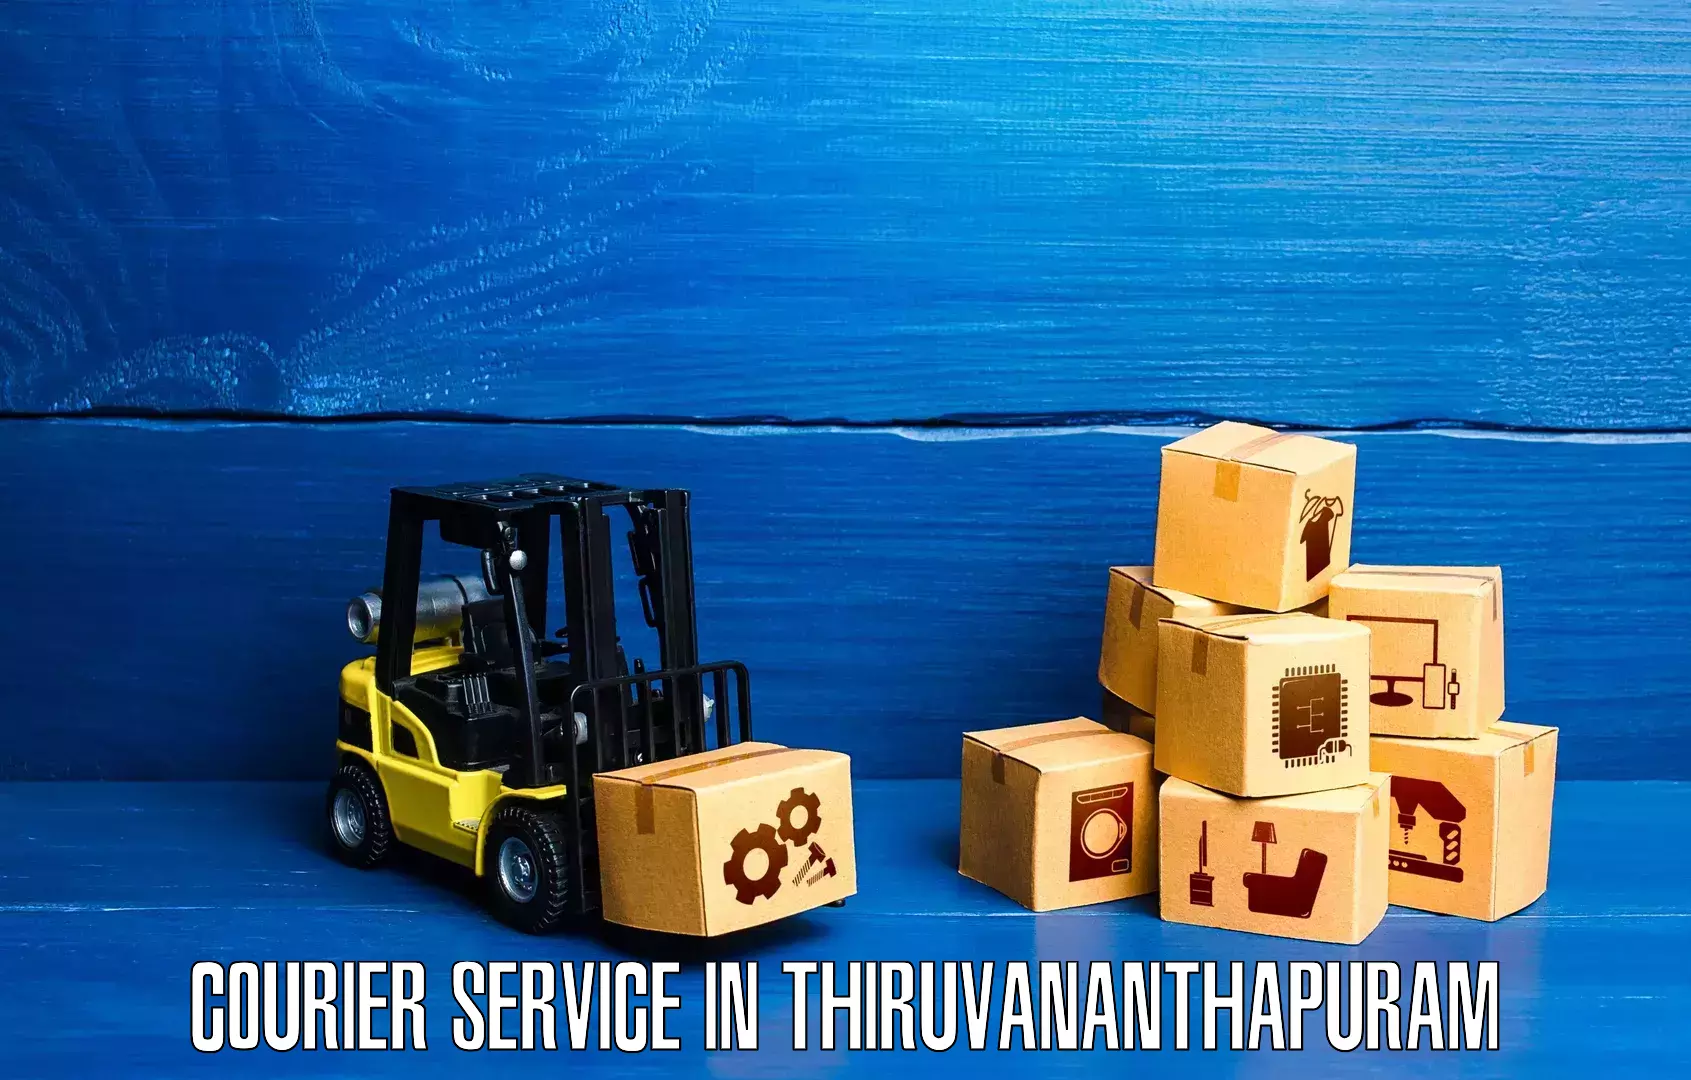 Efficient courier operations in Thiruvananthapuram